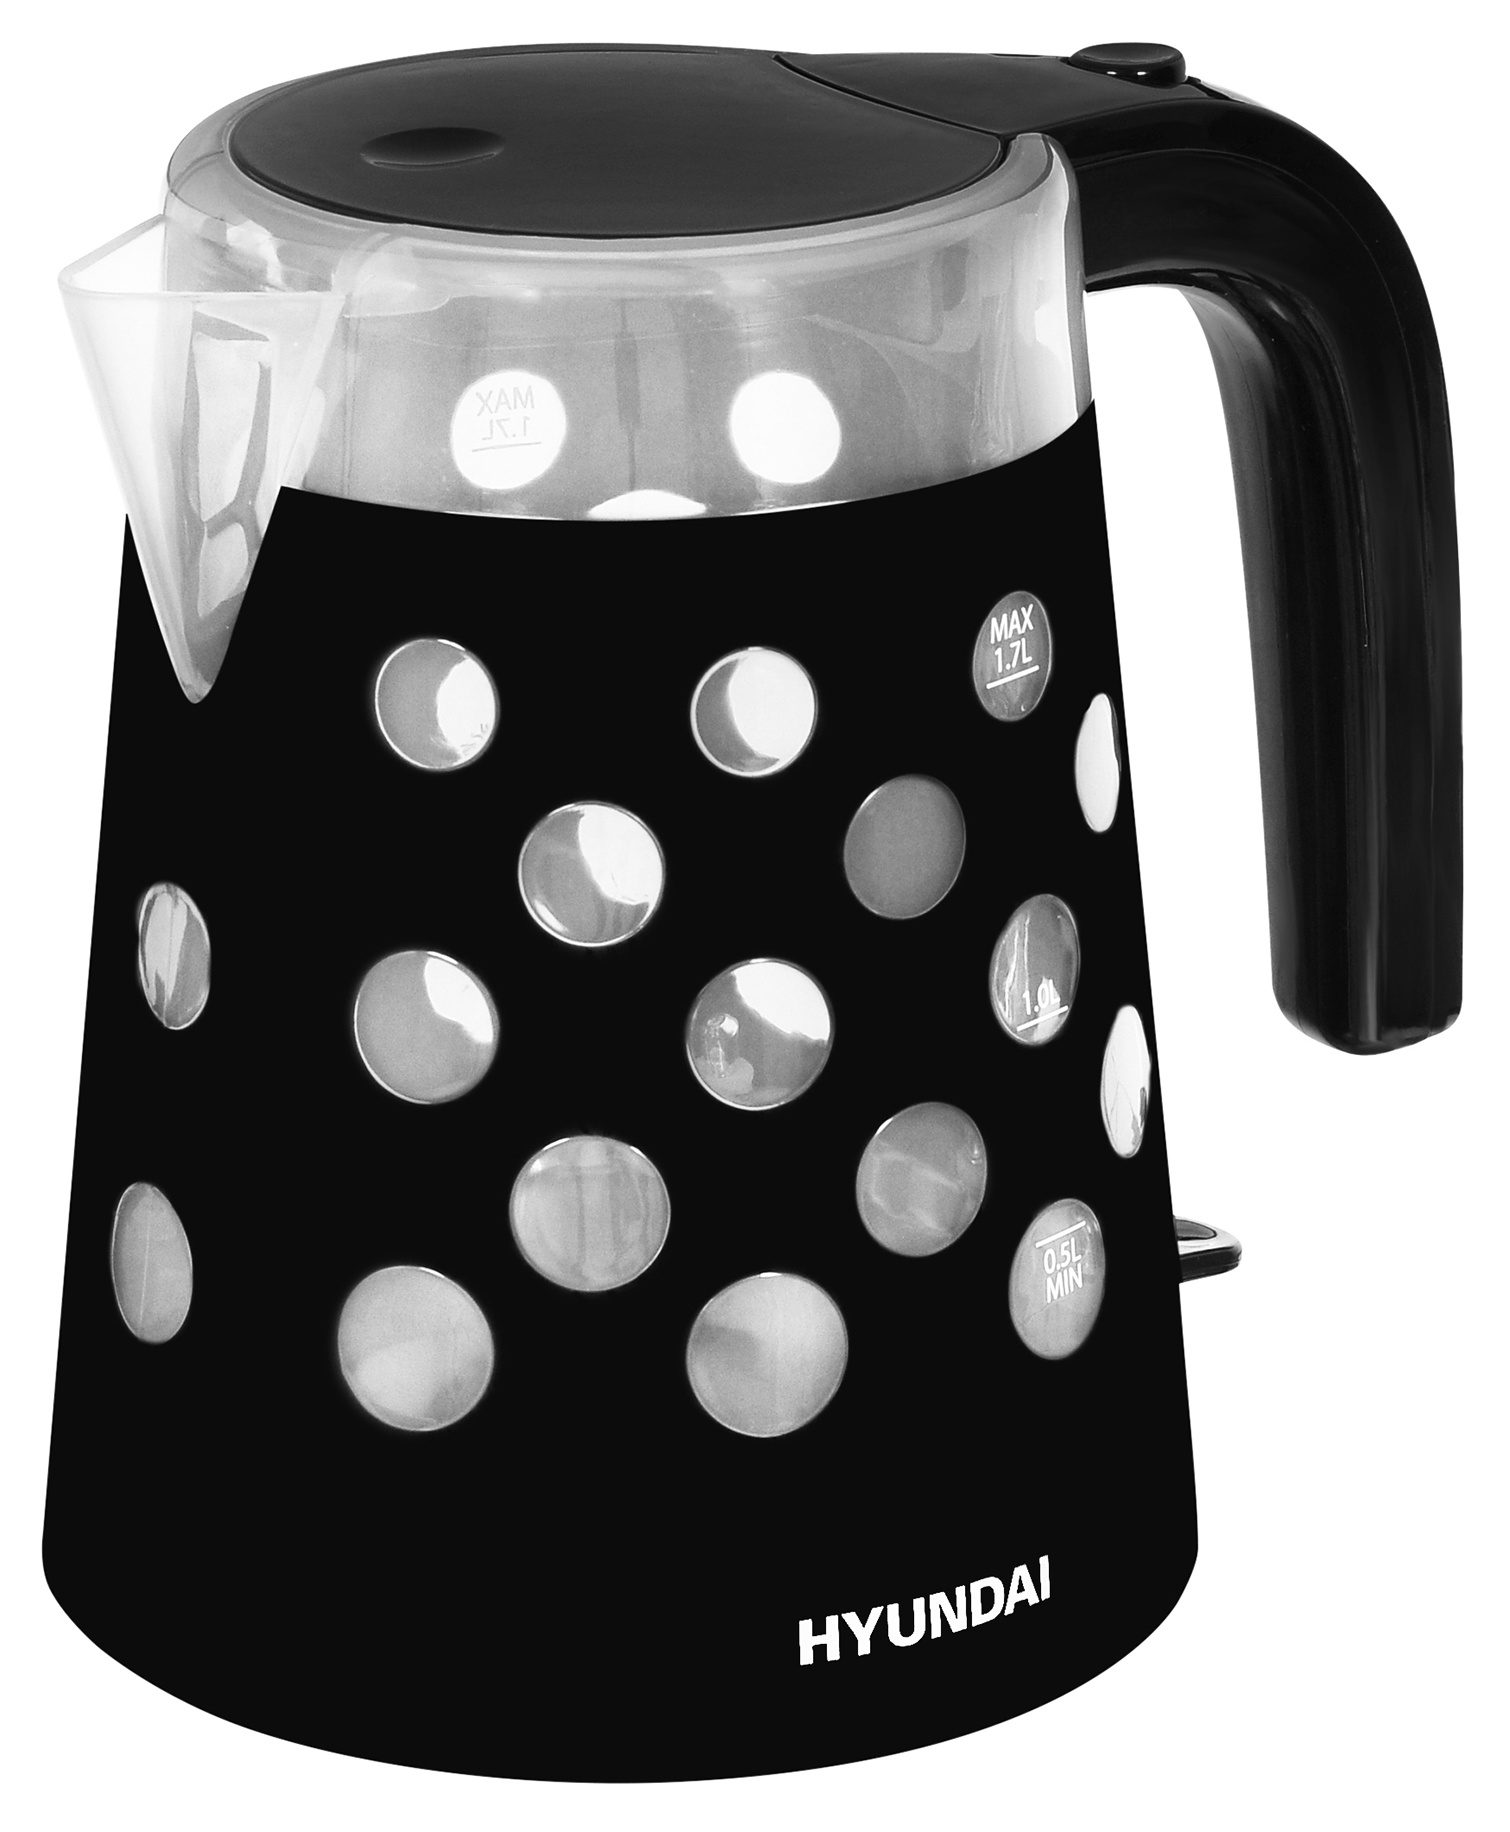 Чайник электрический HYUNDAI HYK-G2012 1.7 л прозрачный, черный чайник электрический hyundai hyk g2012 1 7л 2200вт черный прозрачный корпус пластик